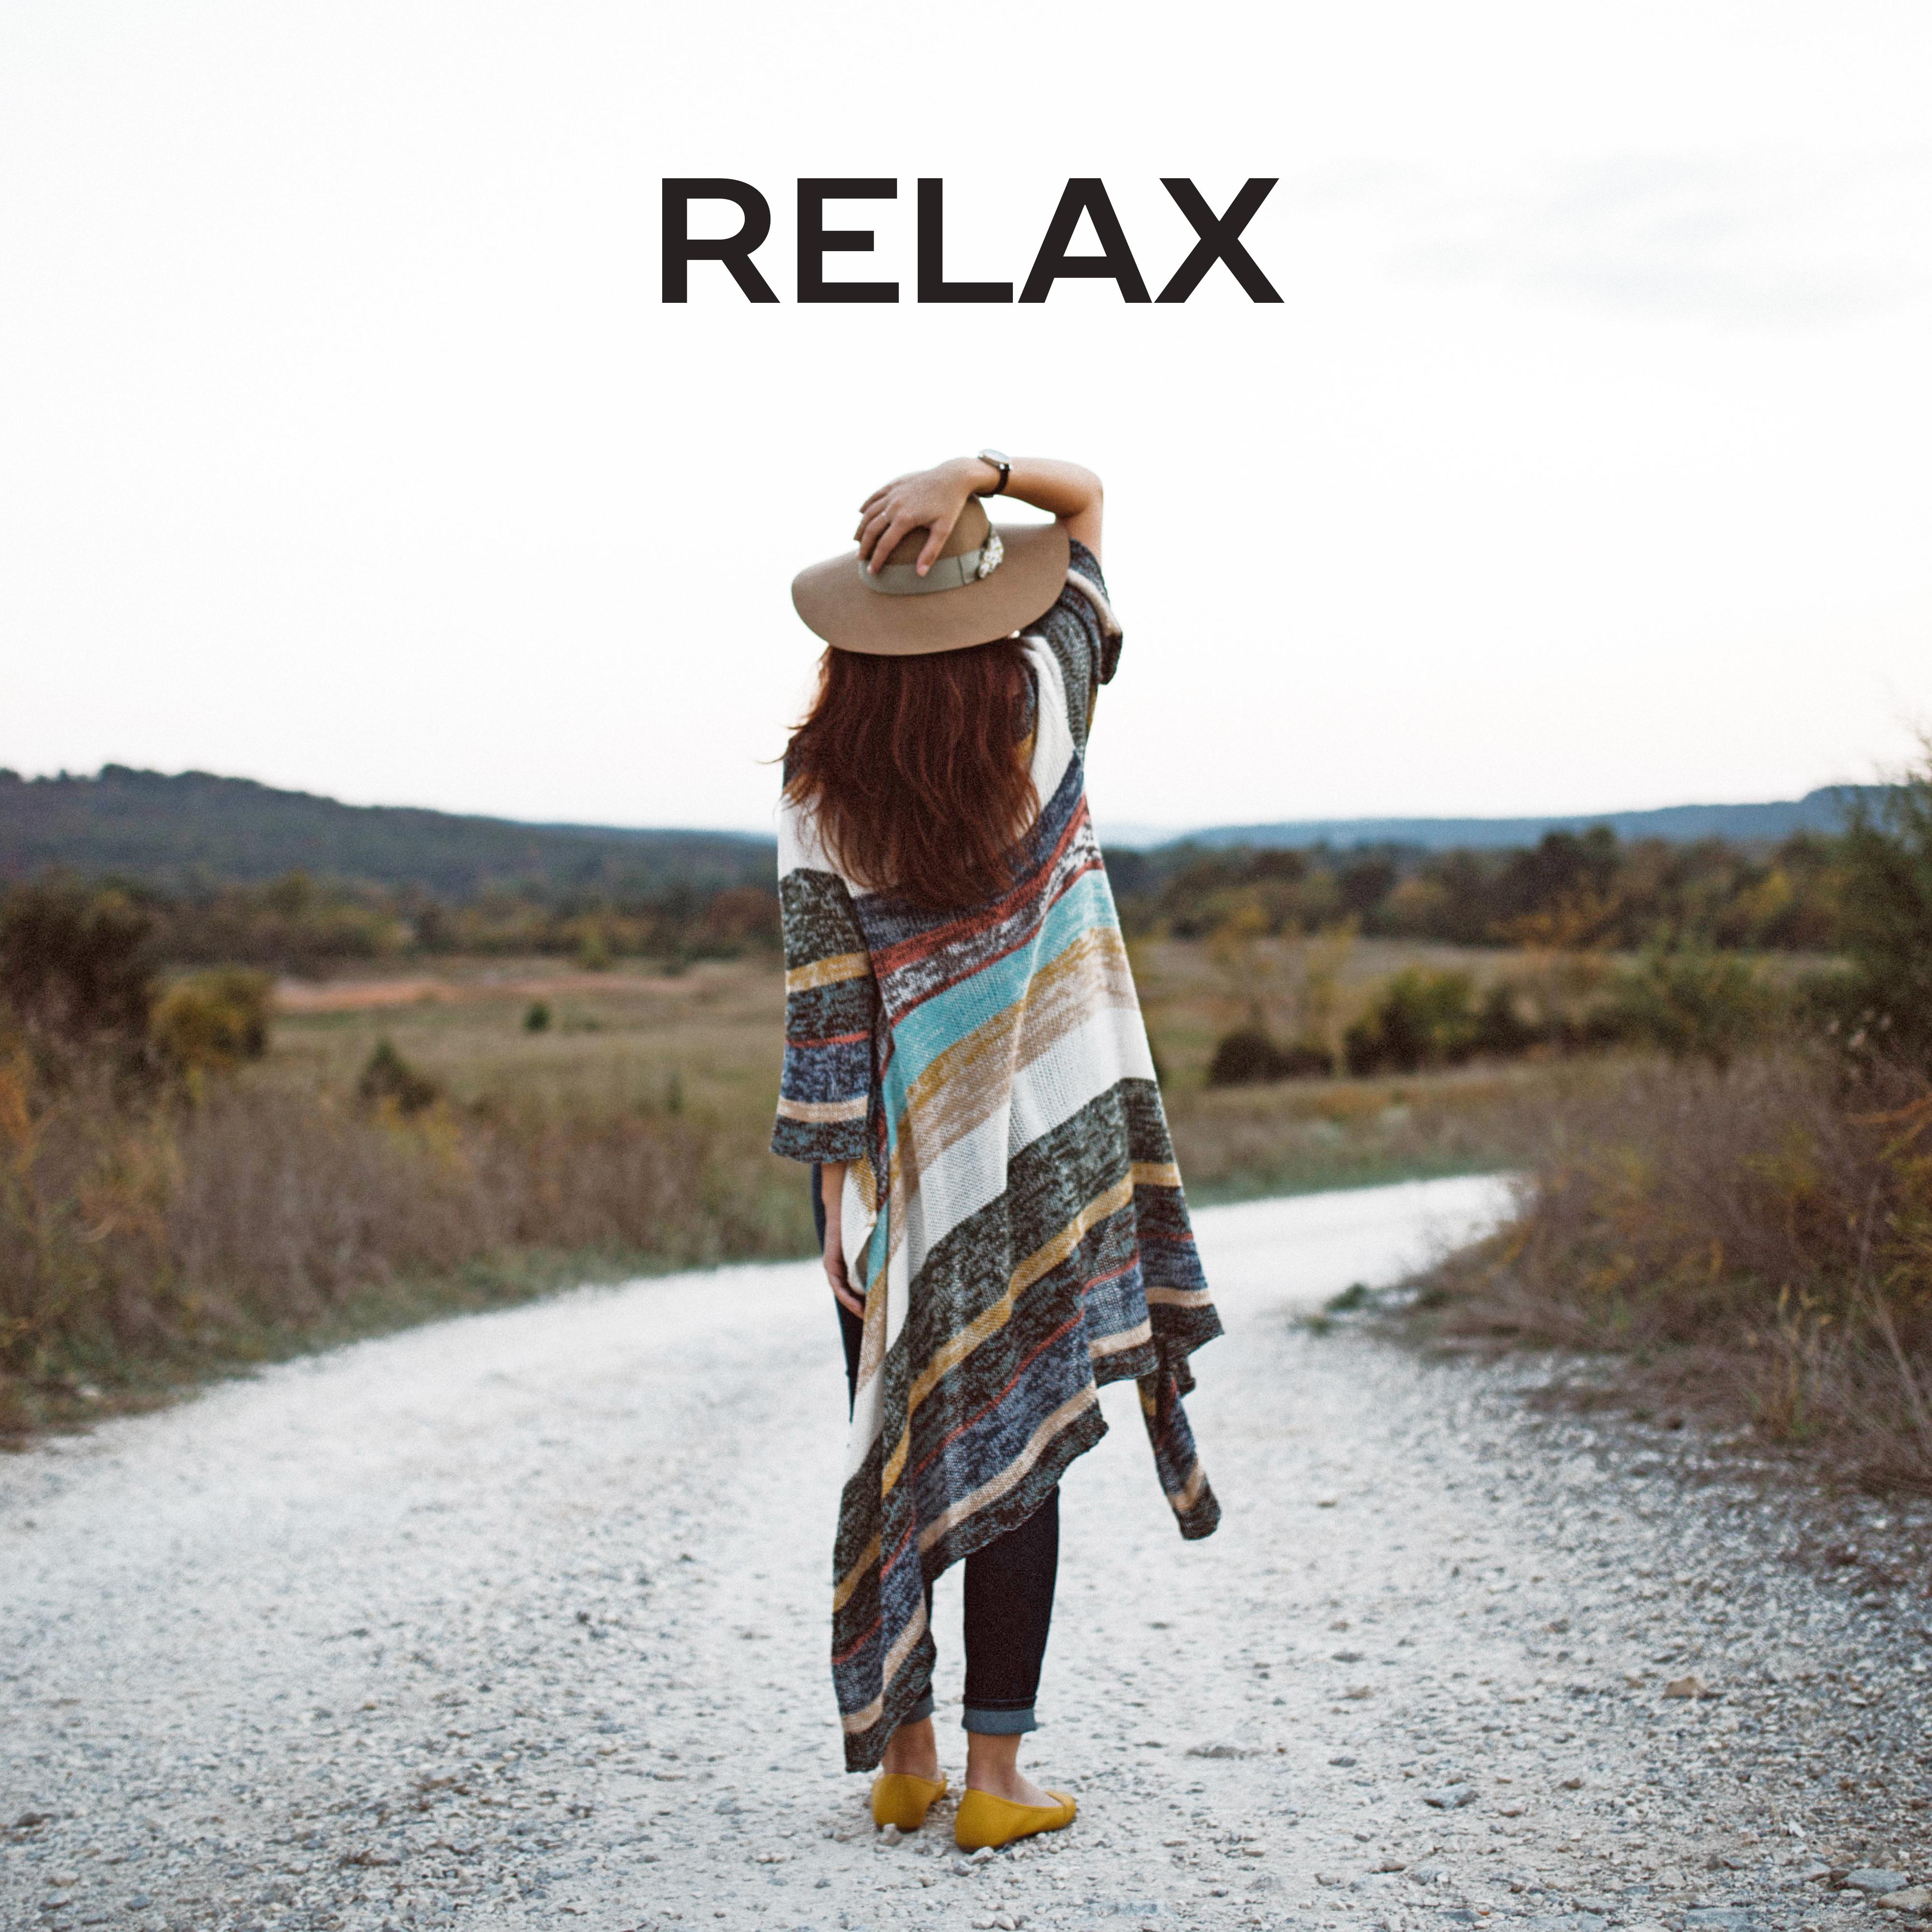 Relax – New Age, Sounds of Nature, Zen, Reiki, Healing Music, Rest, Massage